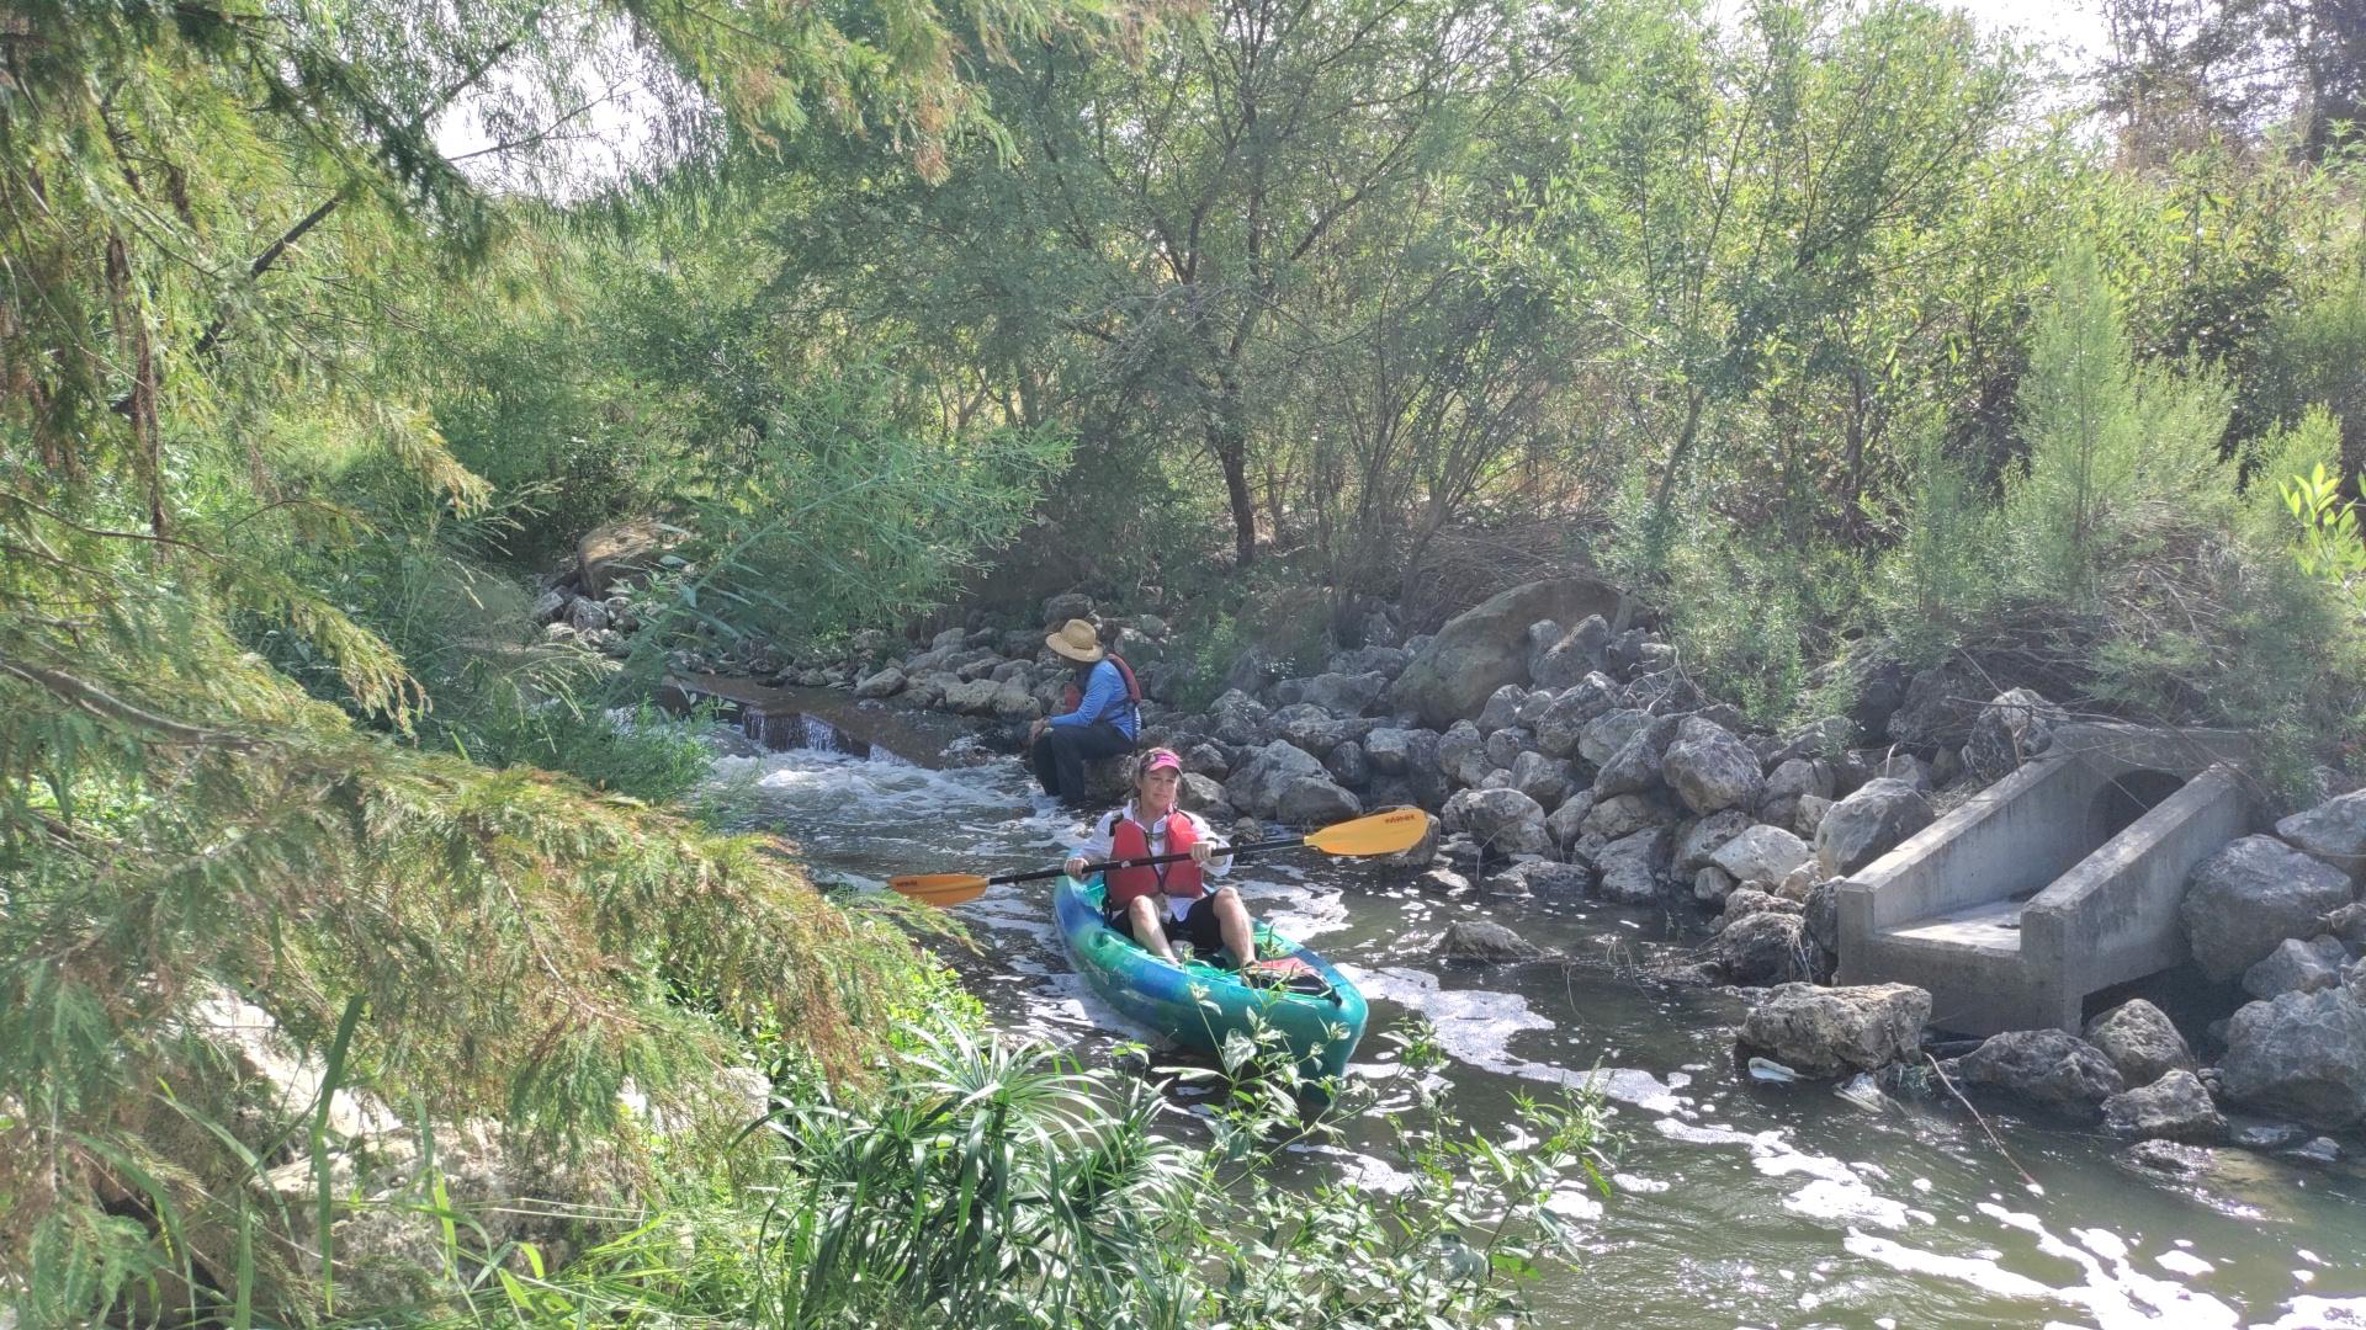 Kayak goers paddle downstream on the San Antonio River.